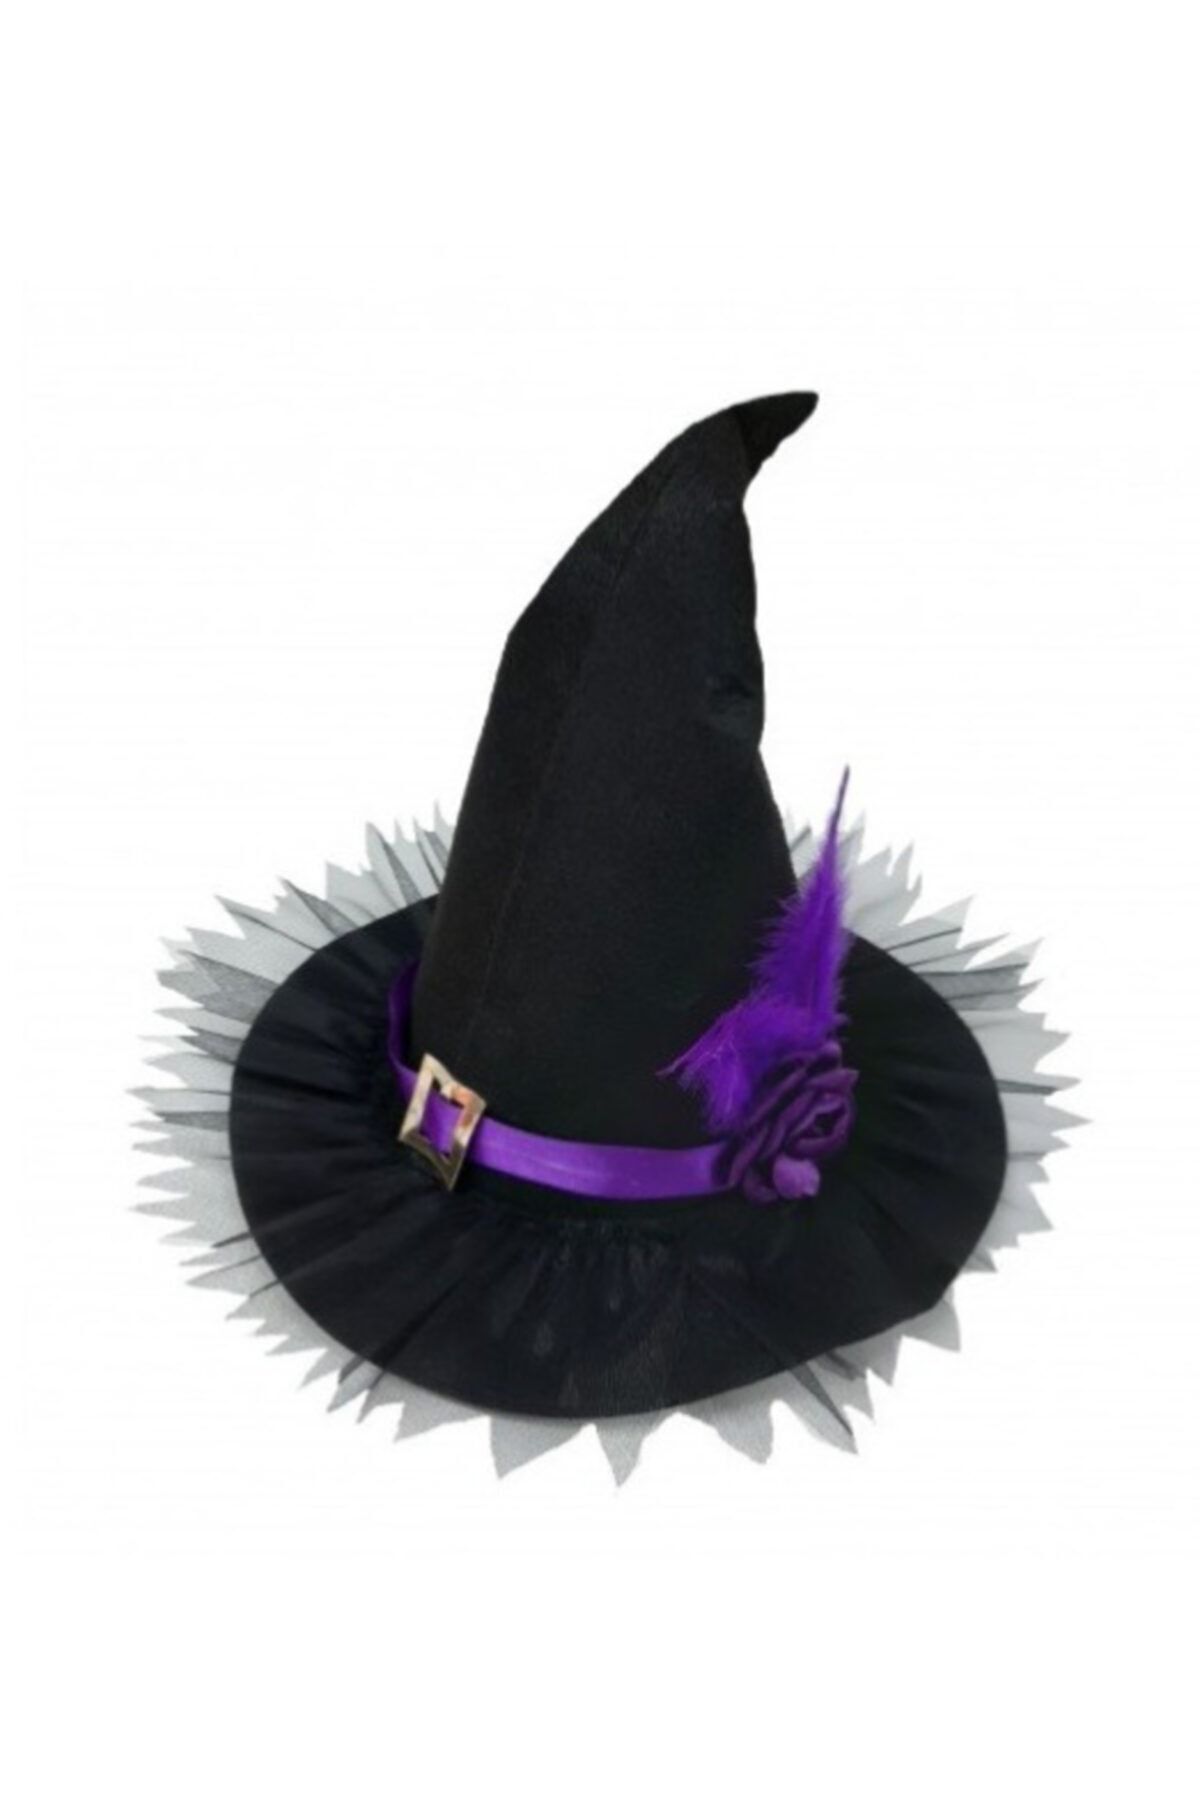 KOSTÜMCE Cadı Şapkası Yetişkin Lüx Model